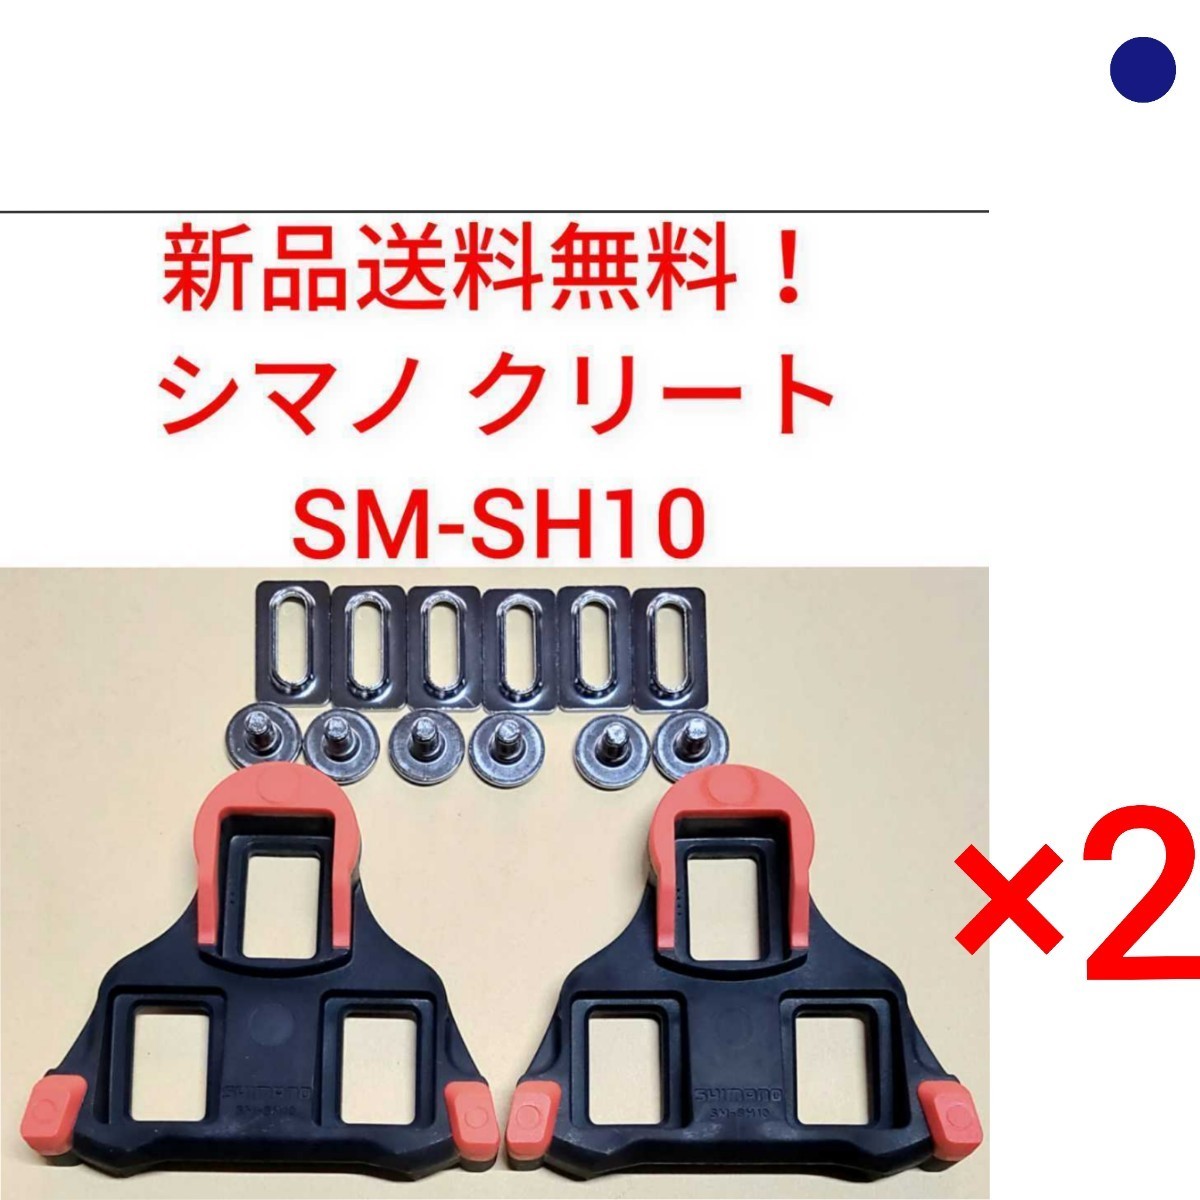 【新品送料無料】 クリート SM-SH10 2点セットシマノ shimano SPD-SL 固定モード ペダル SMSH10 赤 部品 補修 SMSH10 自転車 純正 正規品の画像1